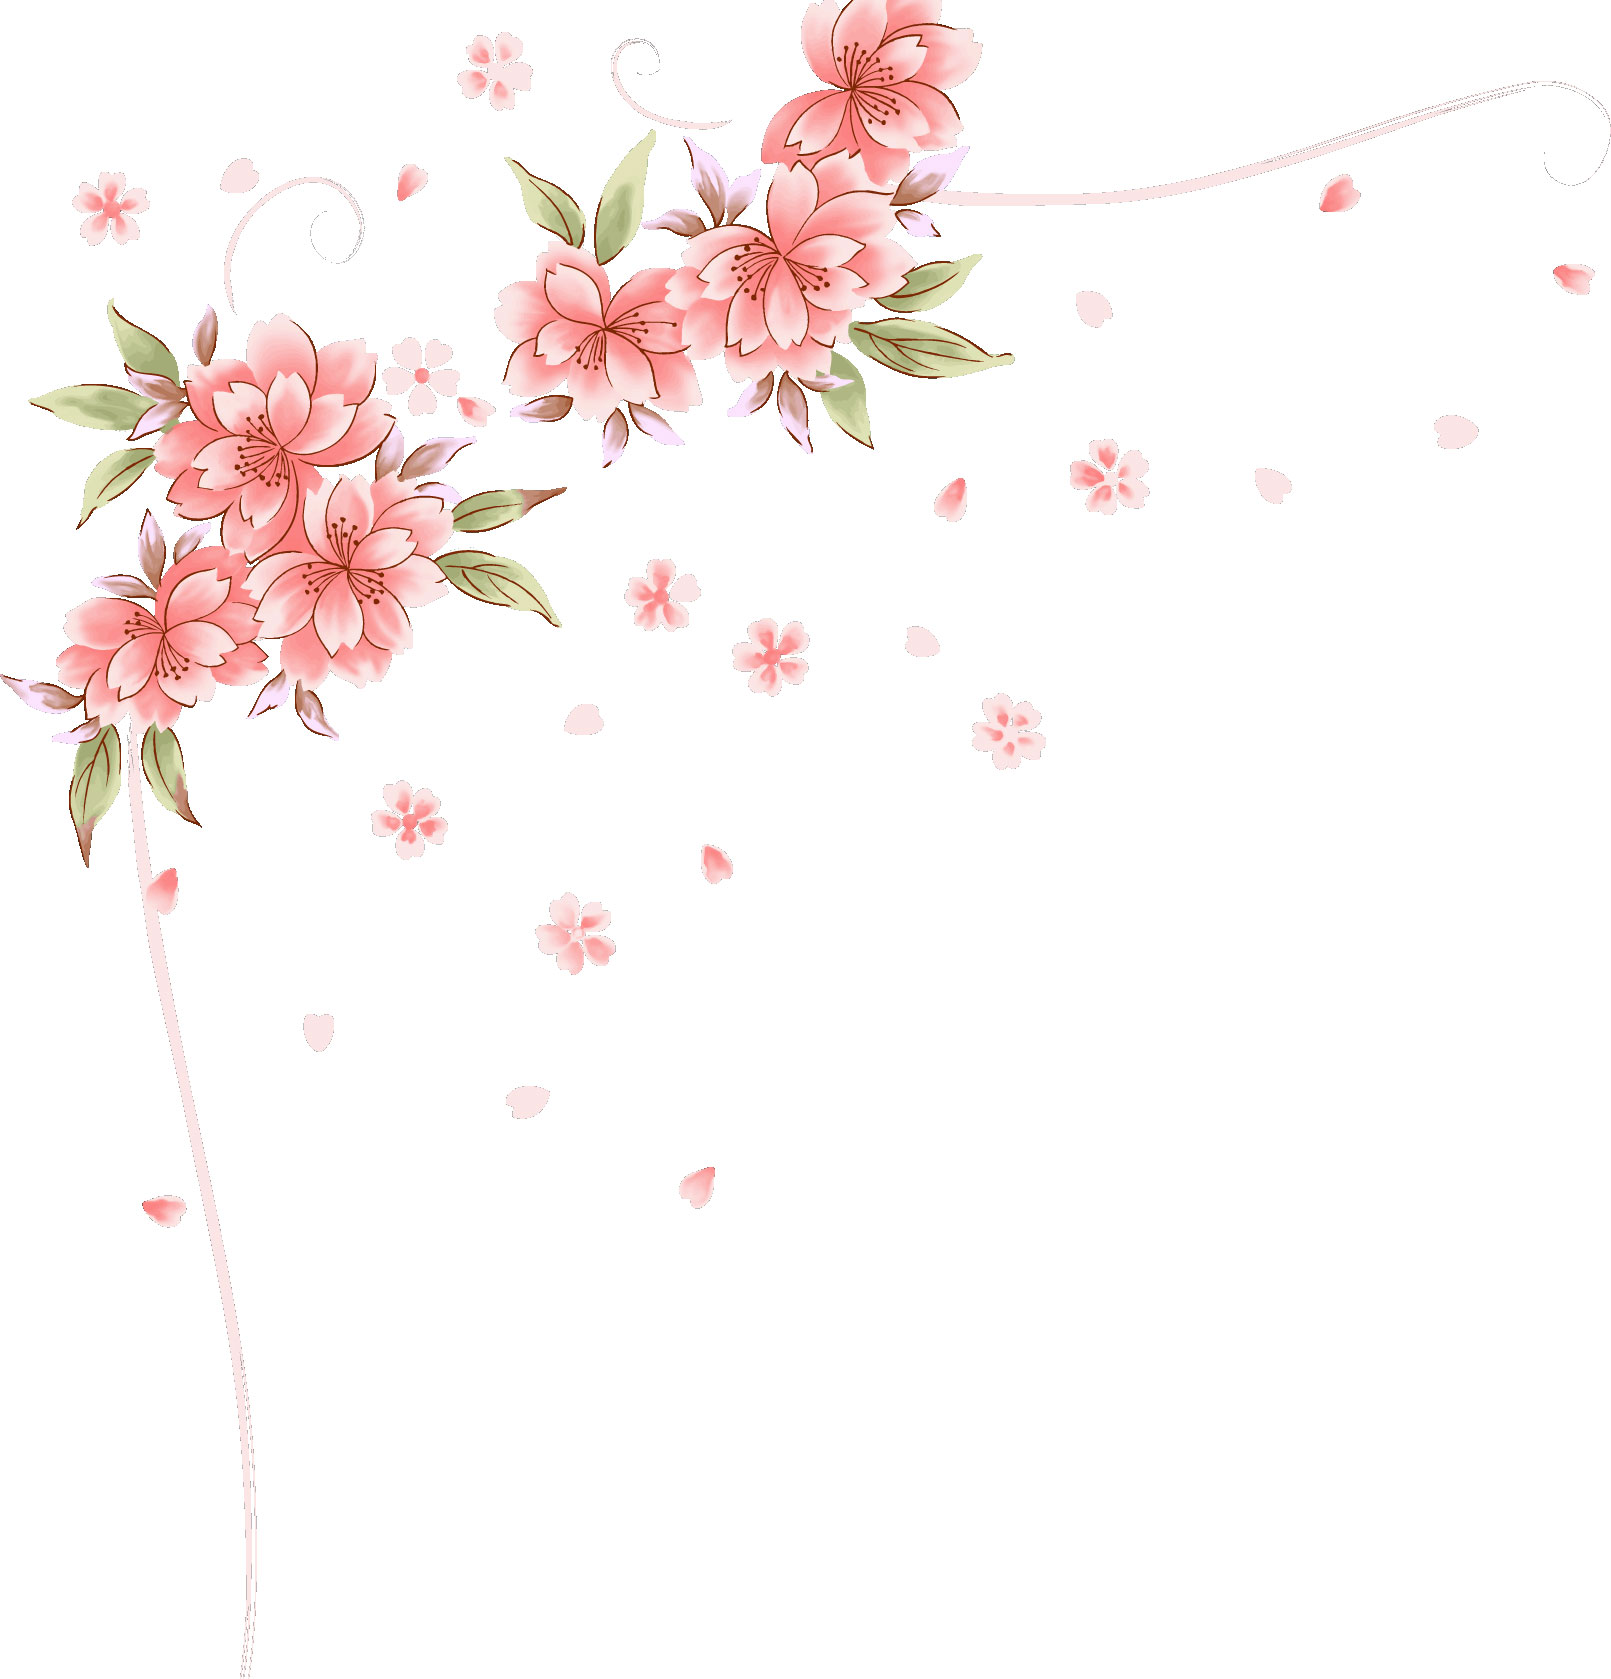 リアルな花のイラスト フリー素材 角 コーナー用no 1481 舞い散る花びら 左